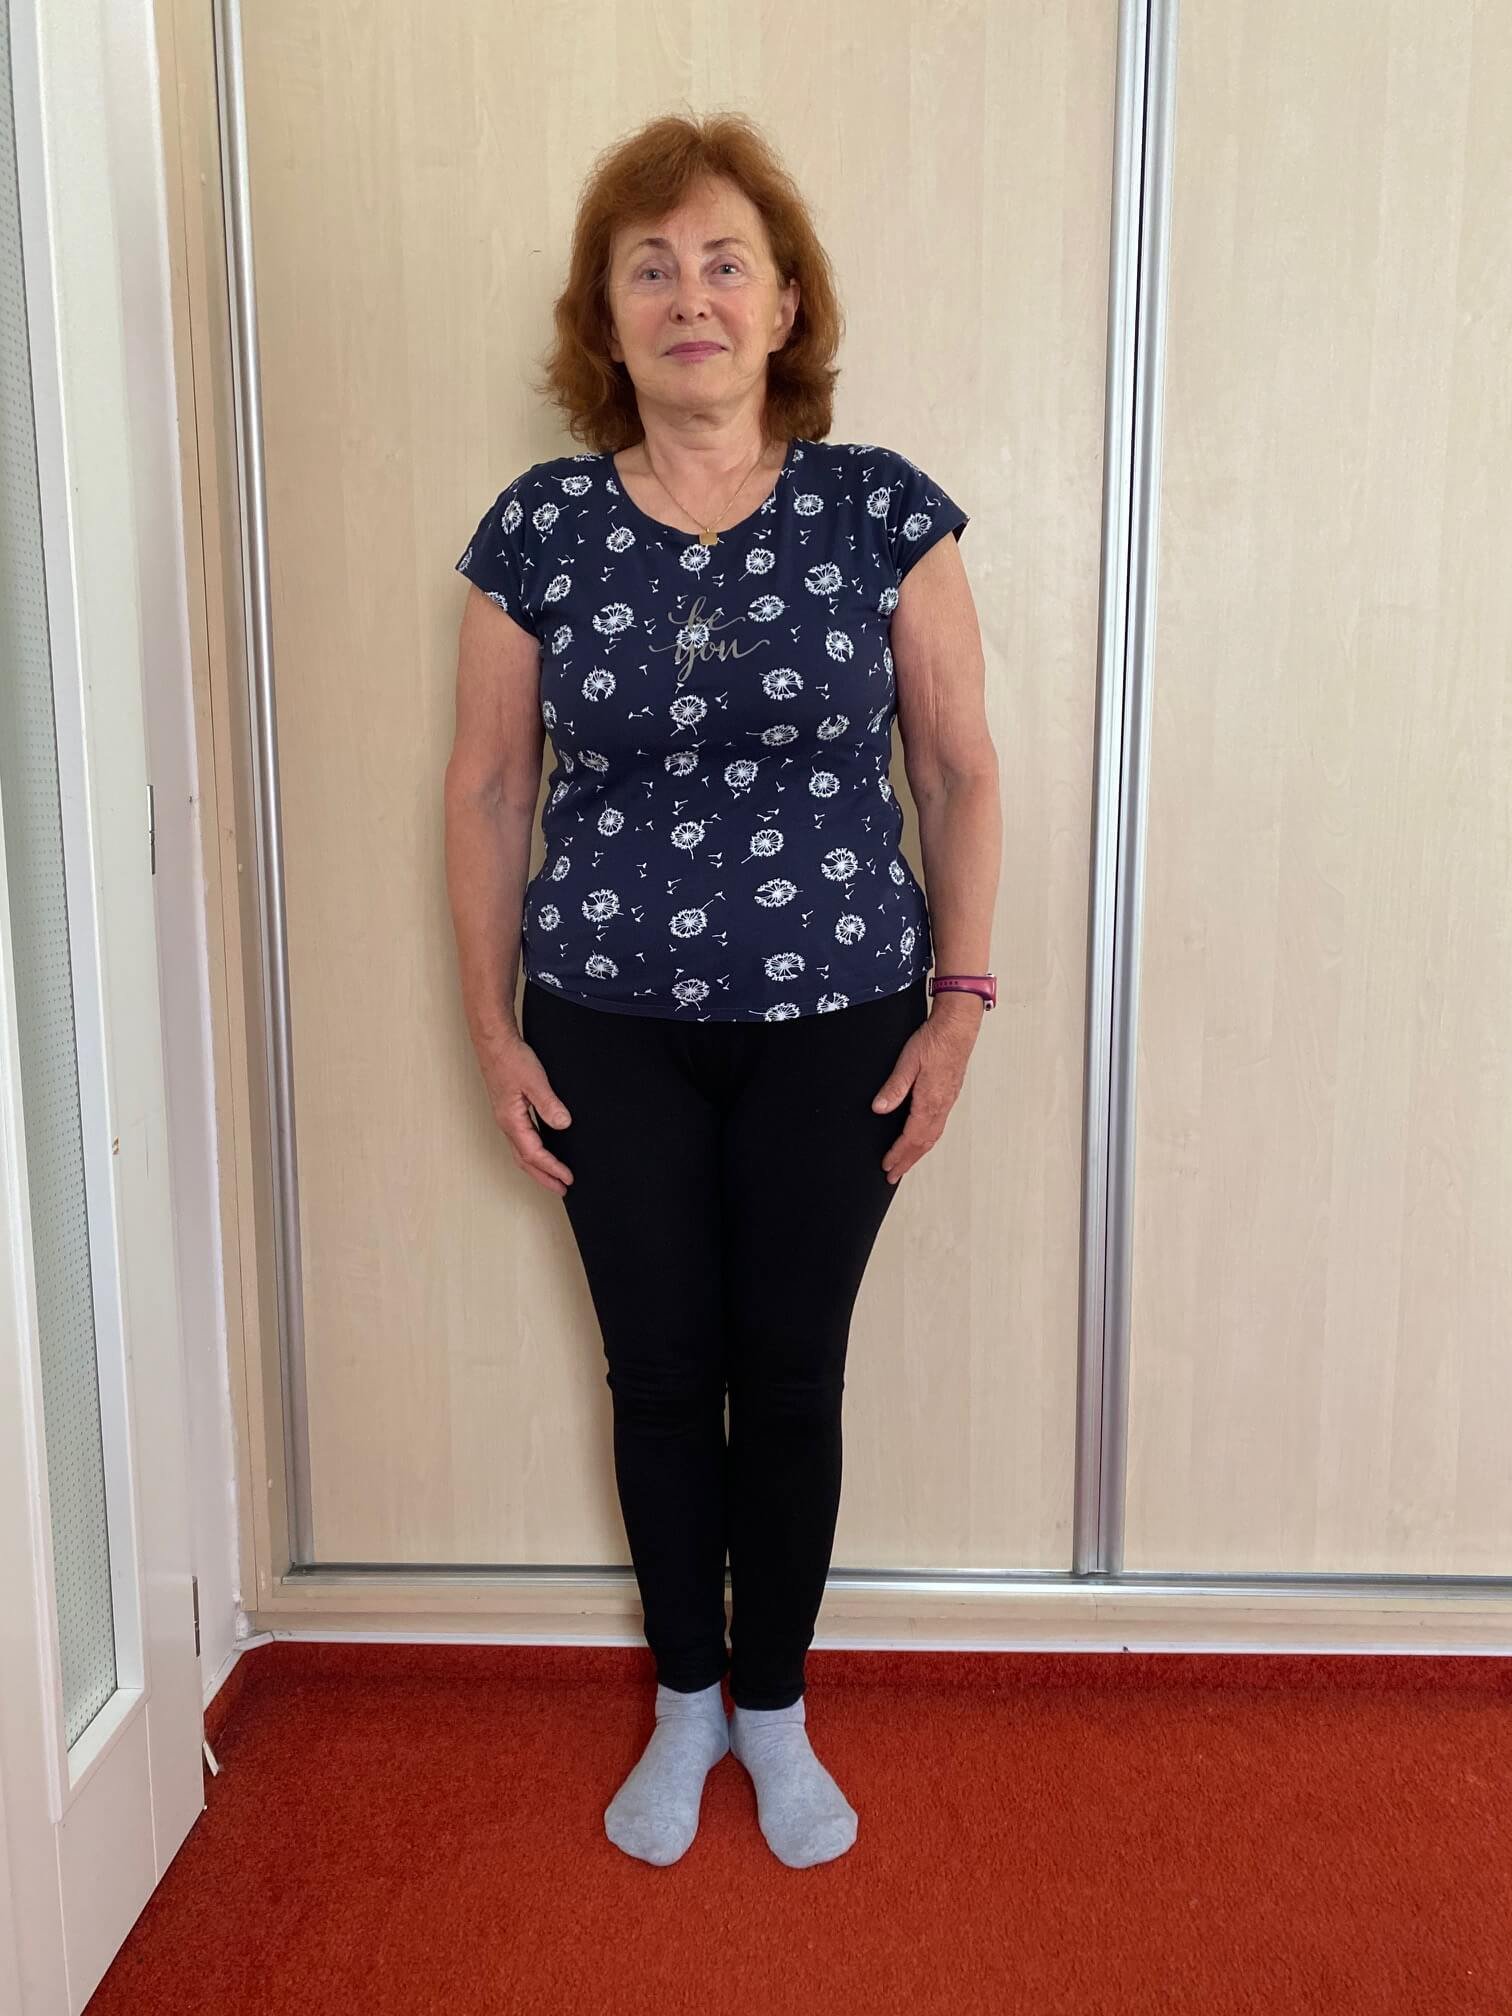 paní Drahomíra po 3. měsíčním programu - 4 kg